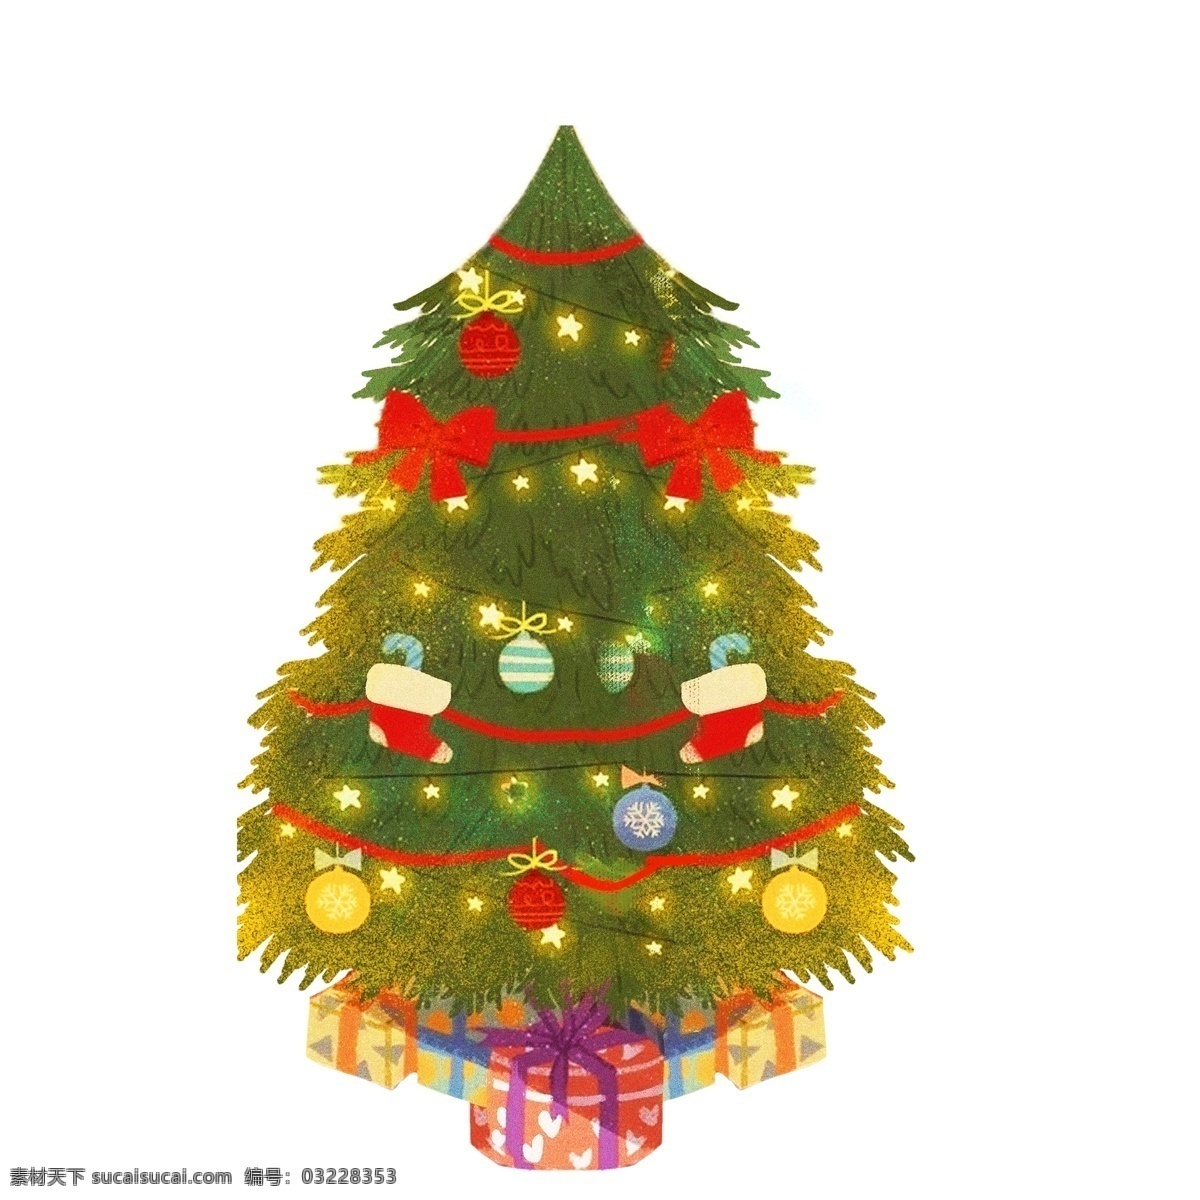 彩绘 圣诞树 装饰 元素 圣诞装饰 圣诞礼物 礼盒 简约 节日元素 节日装饰 手绘 元素设计 创意元素 手绘元素 psd元素